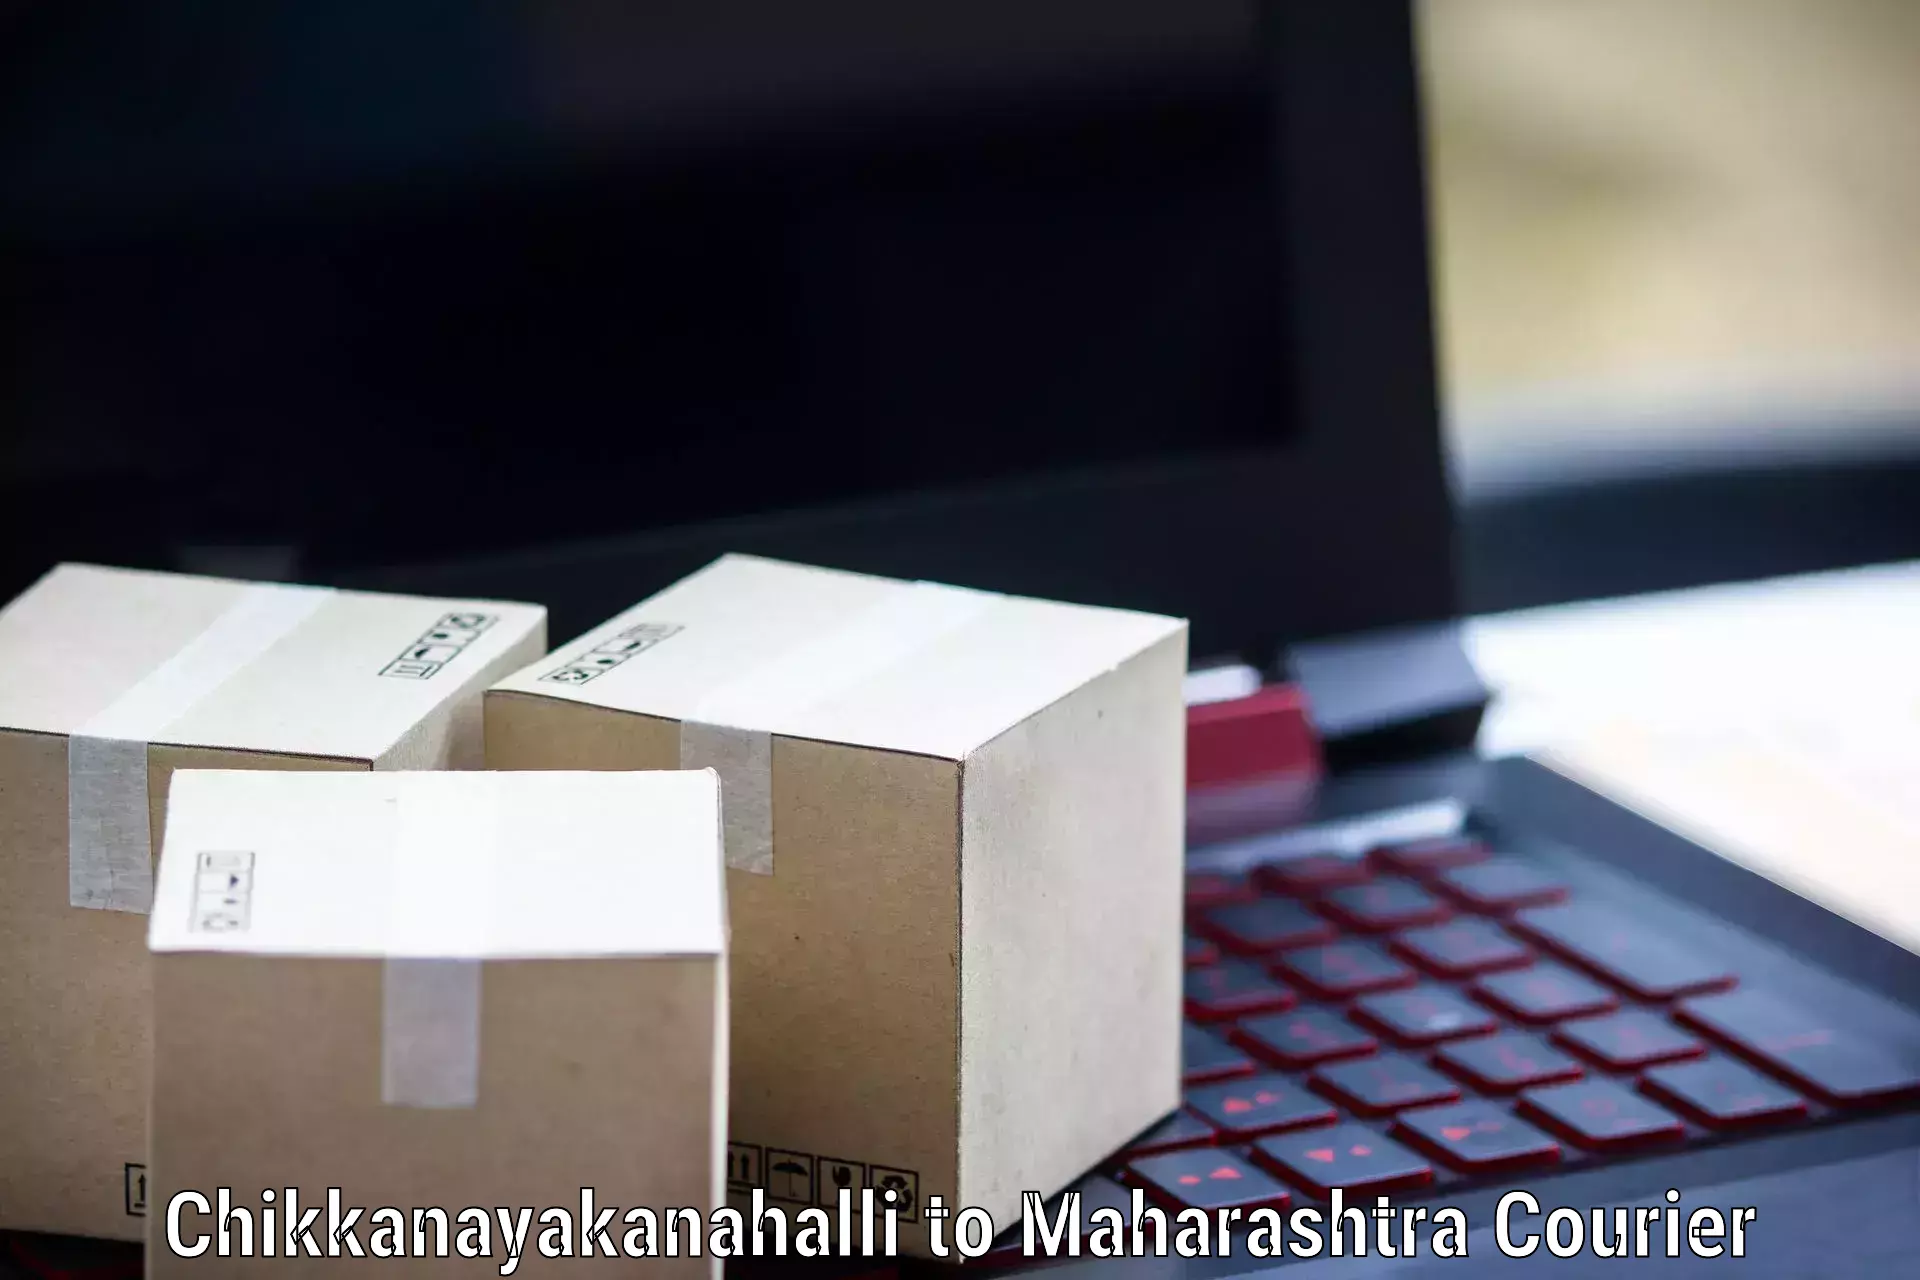 Express package handling Chikkanayakanahalli to Sillod